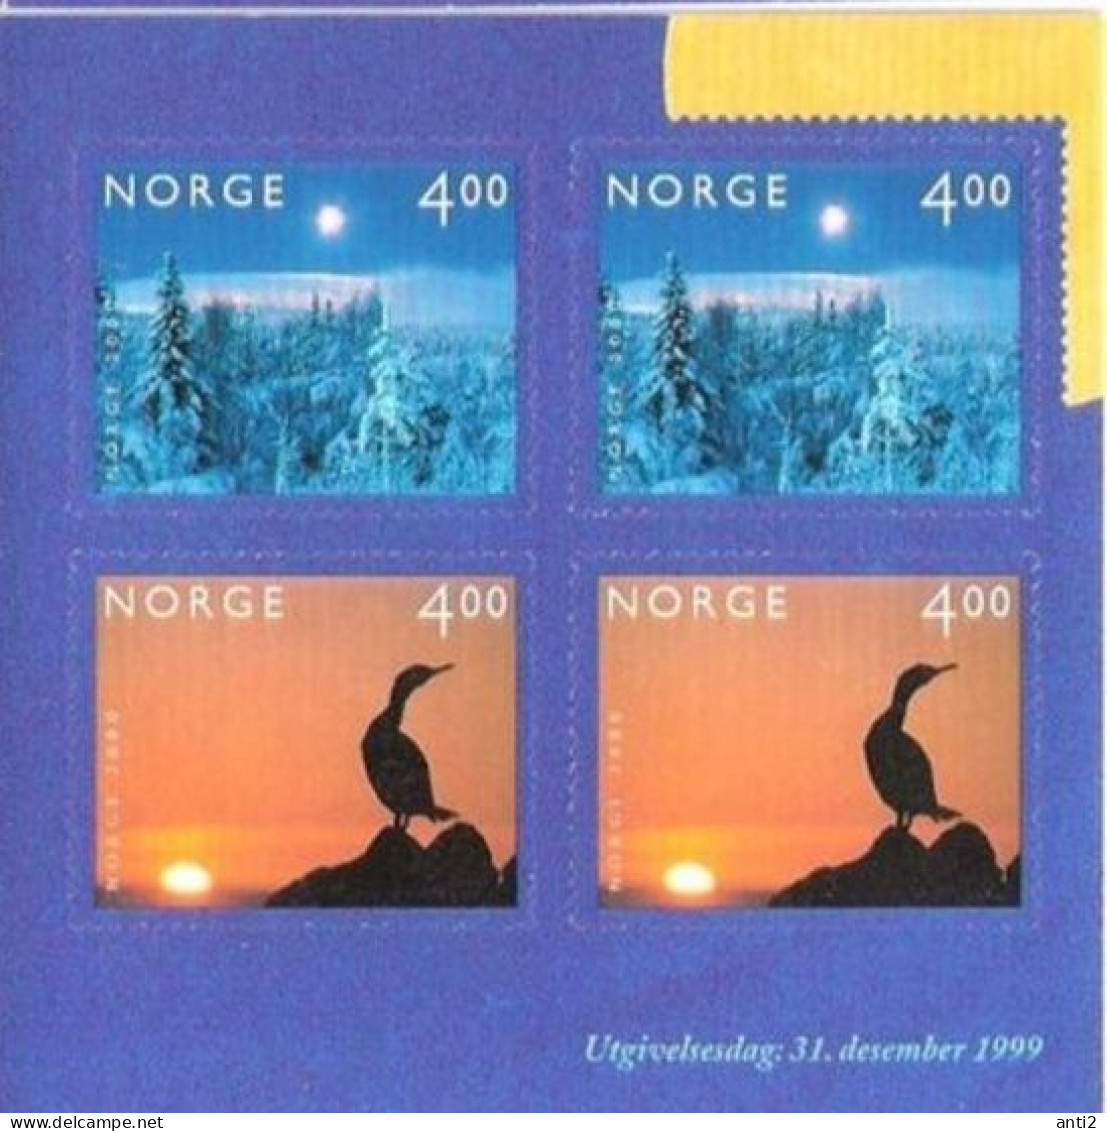 Norge Norway 1999 Millennium (III). Bird And Winter, Mi 1335-1336 From Booklet,  MNH(**) - Ungebraucht